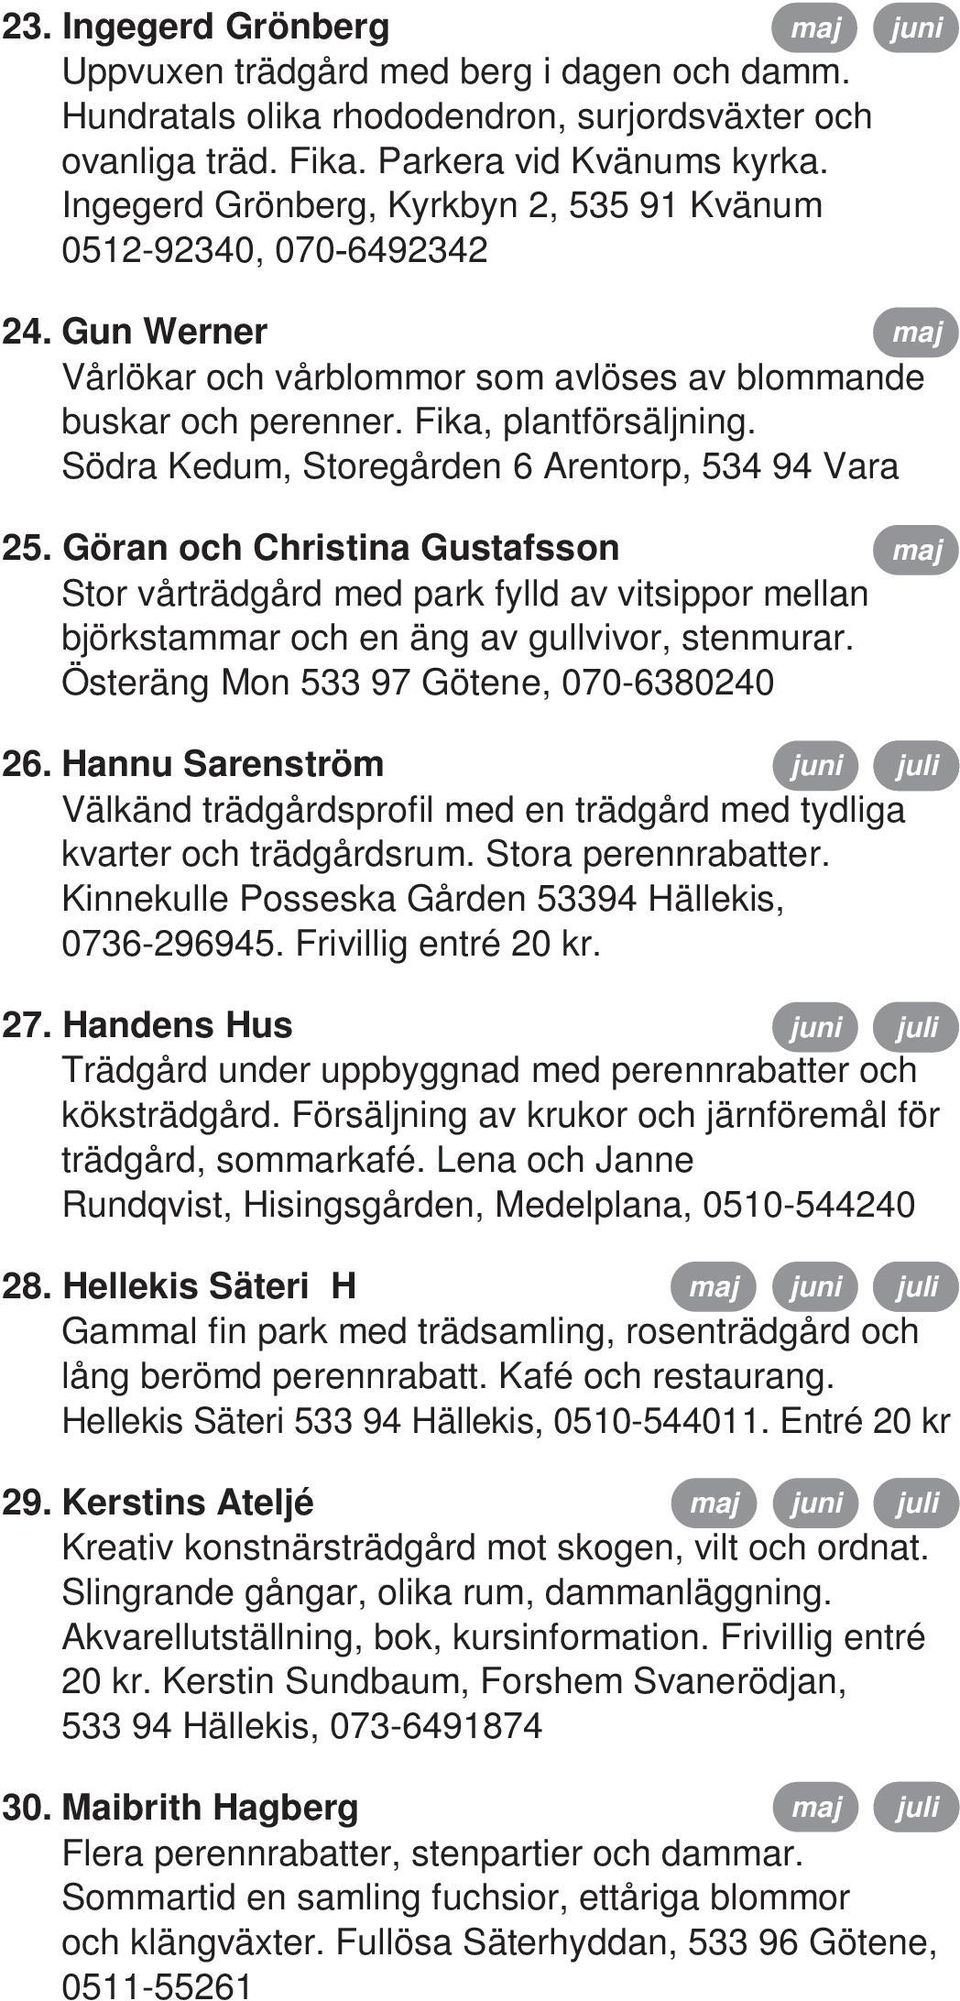 Södra Kedum, Storegården 6 Arentorp, 534 94 Vara 25. Göran och Christina Gustafsson Stor vårträdgård med park fylld av vitsippor mellan björkstammar och en äng av gullvivor, stenmurar.